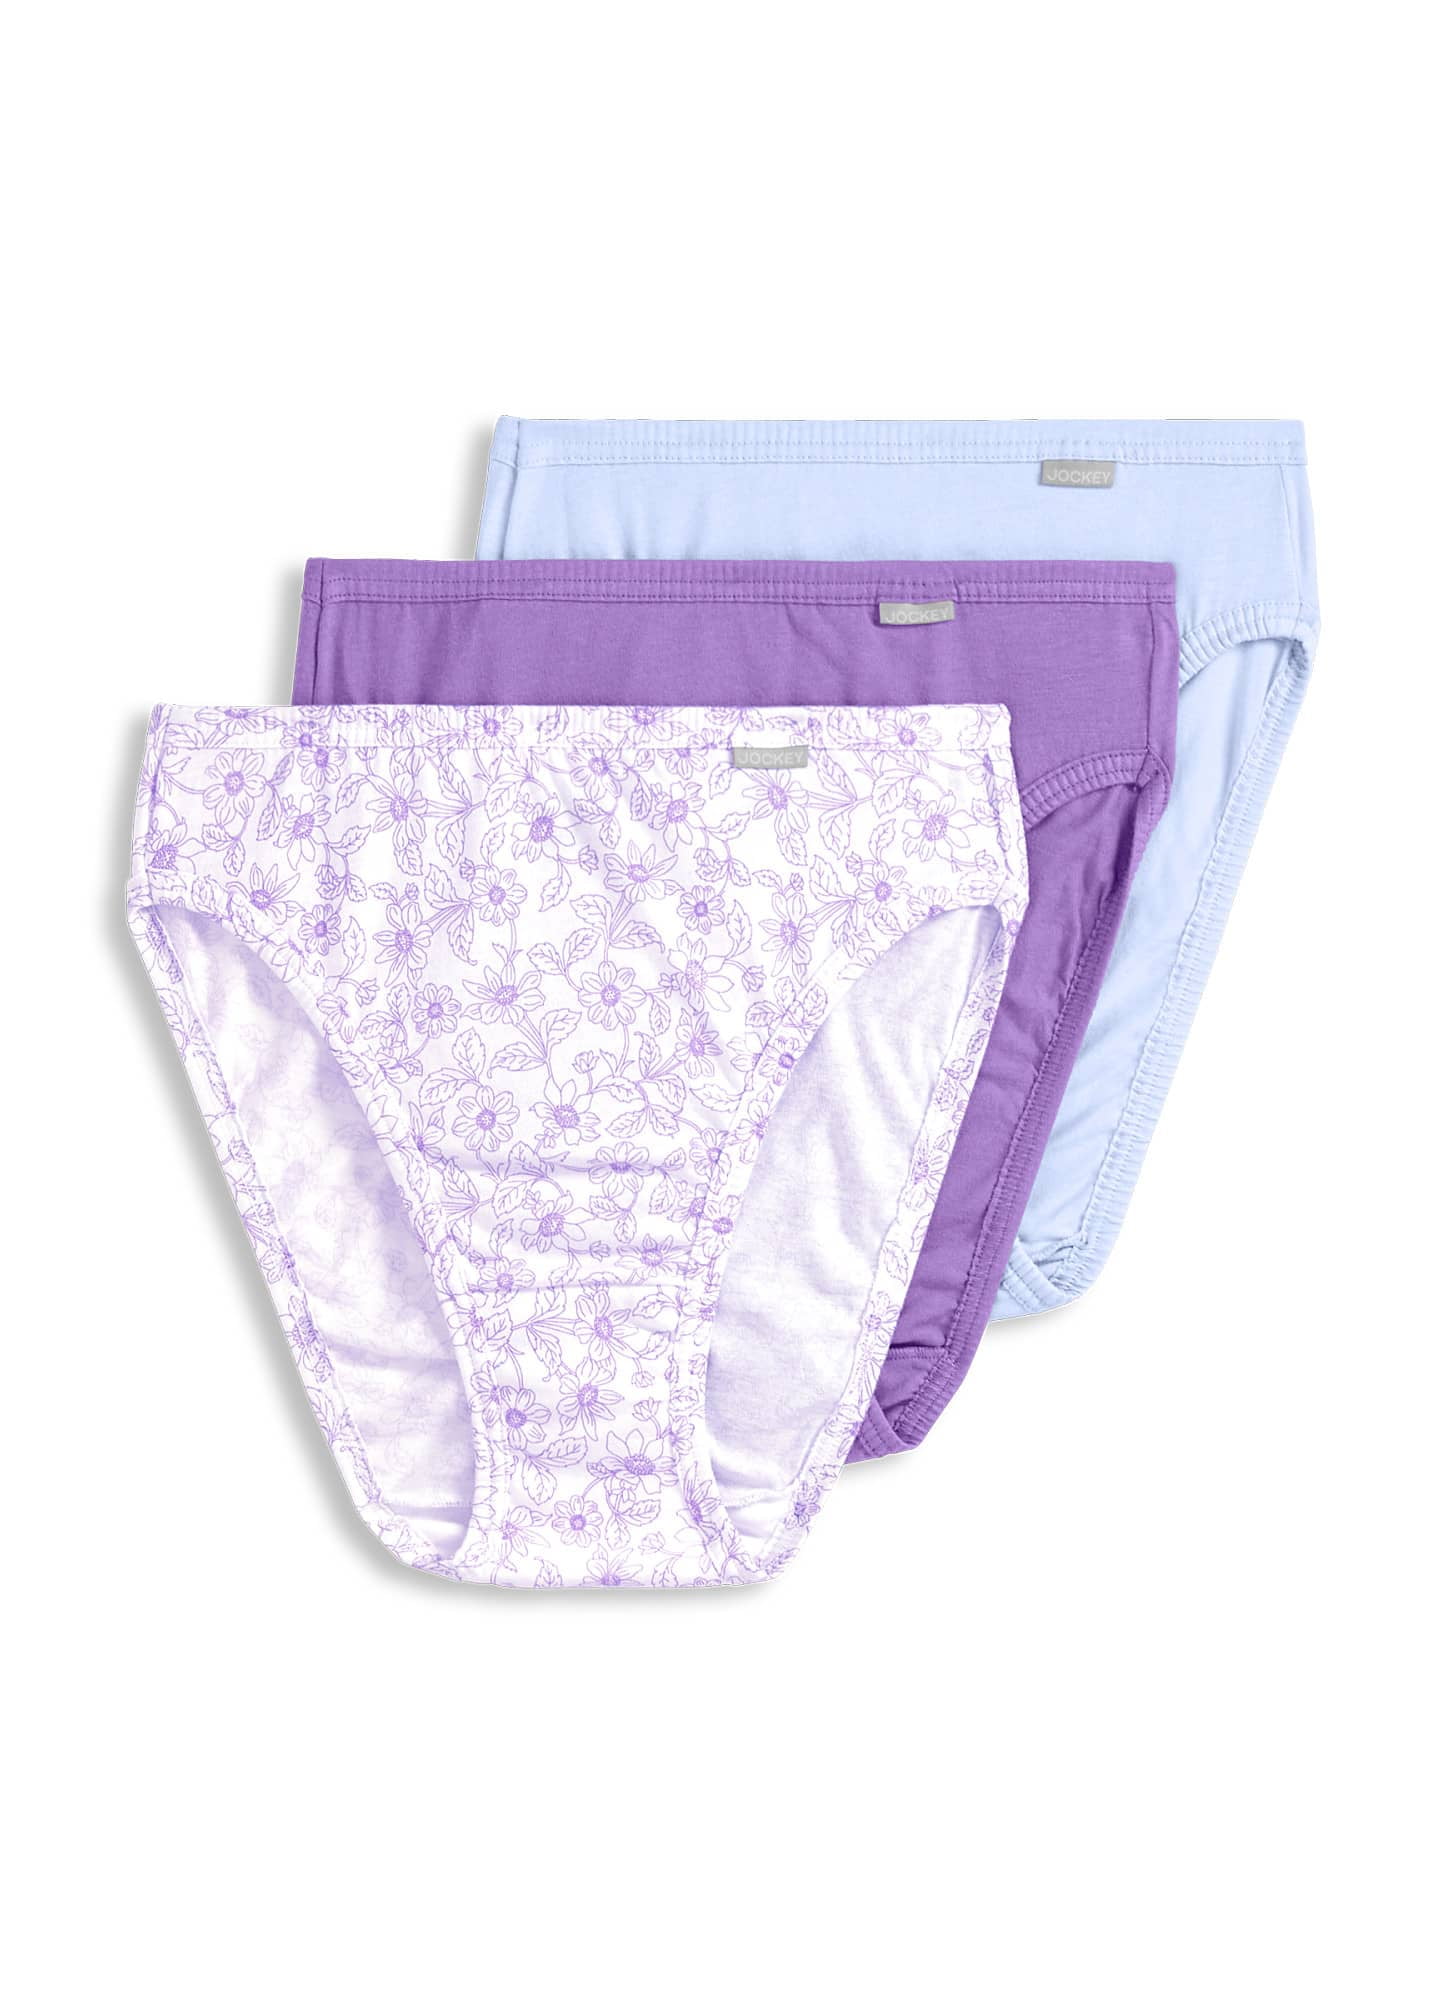 Jockey Women's size 7 Underwear Elance Cotton Briefs Cut 3 Pack White for  sale online